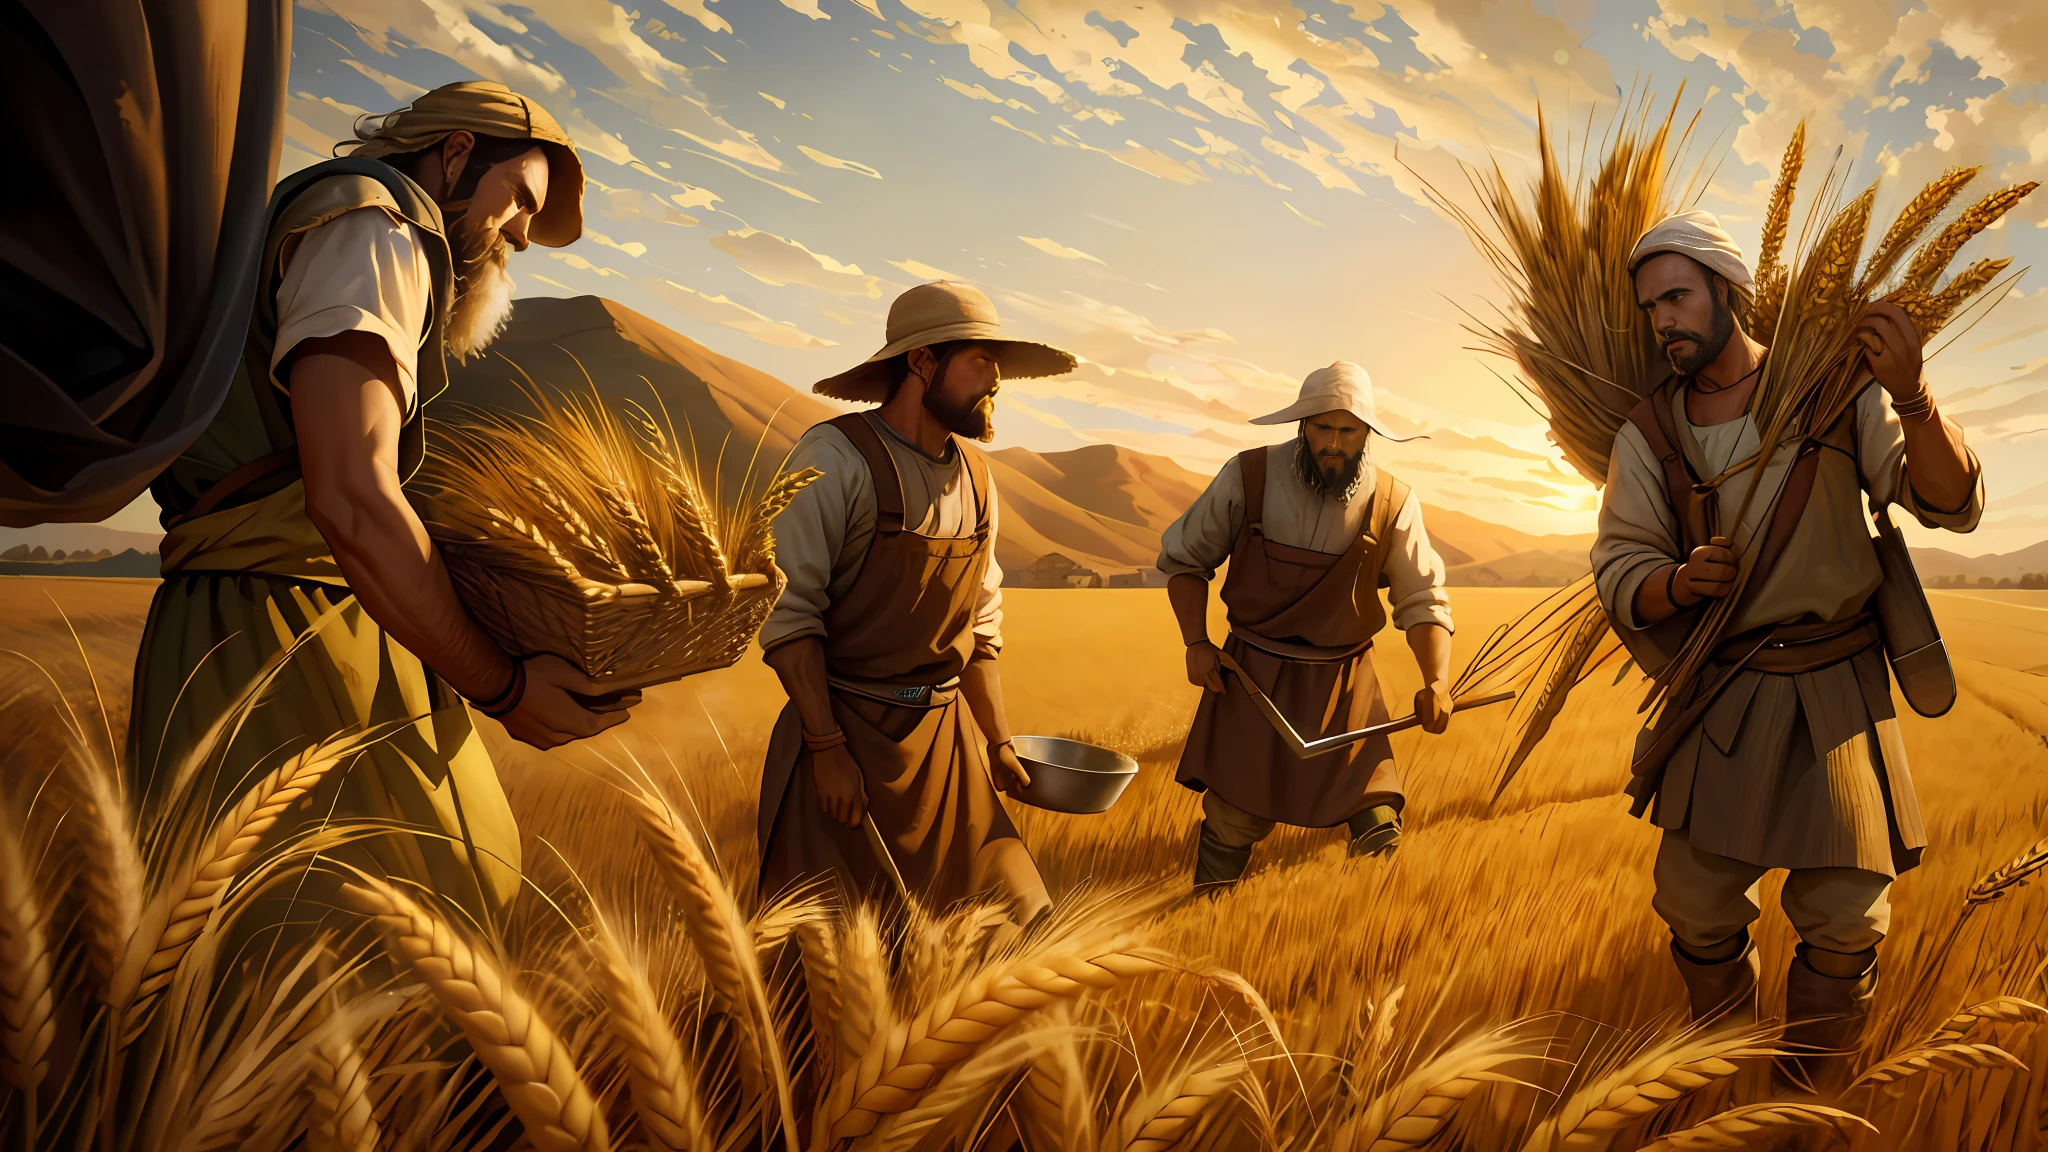 pintura al óleo, hay tres hombres cosechando trigo en el campo, siembra de trigo, representación bíblica épica, 8k hd, iluminación cinematográfica, alta calidad, --s2